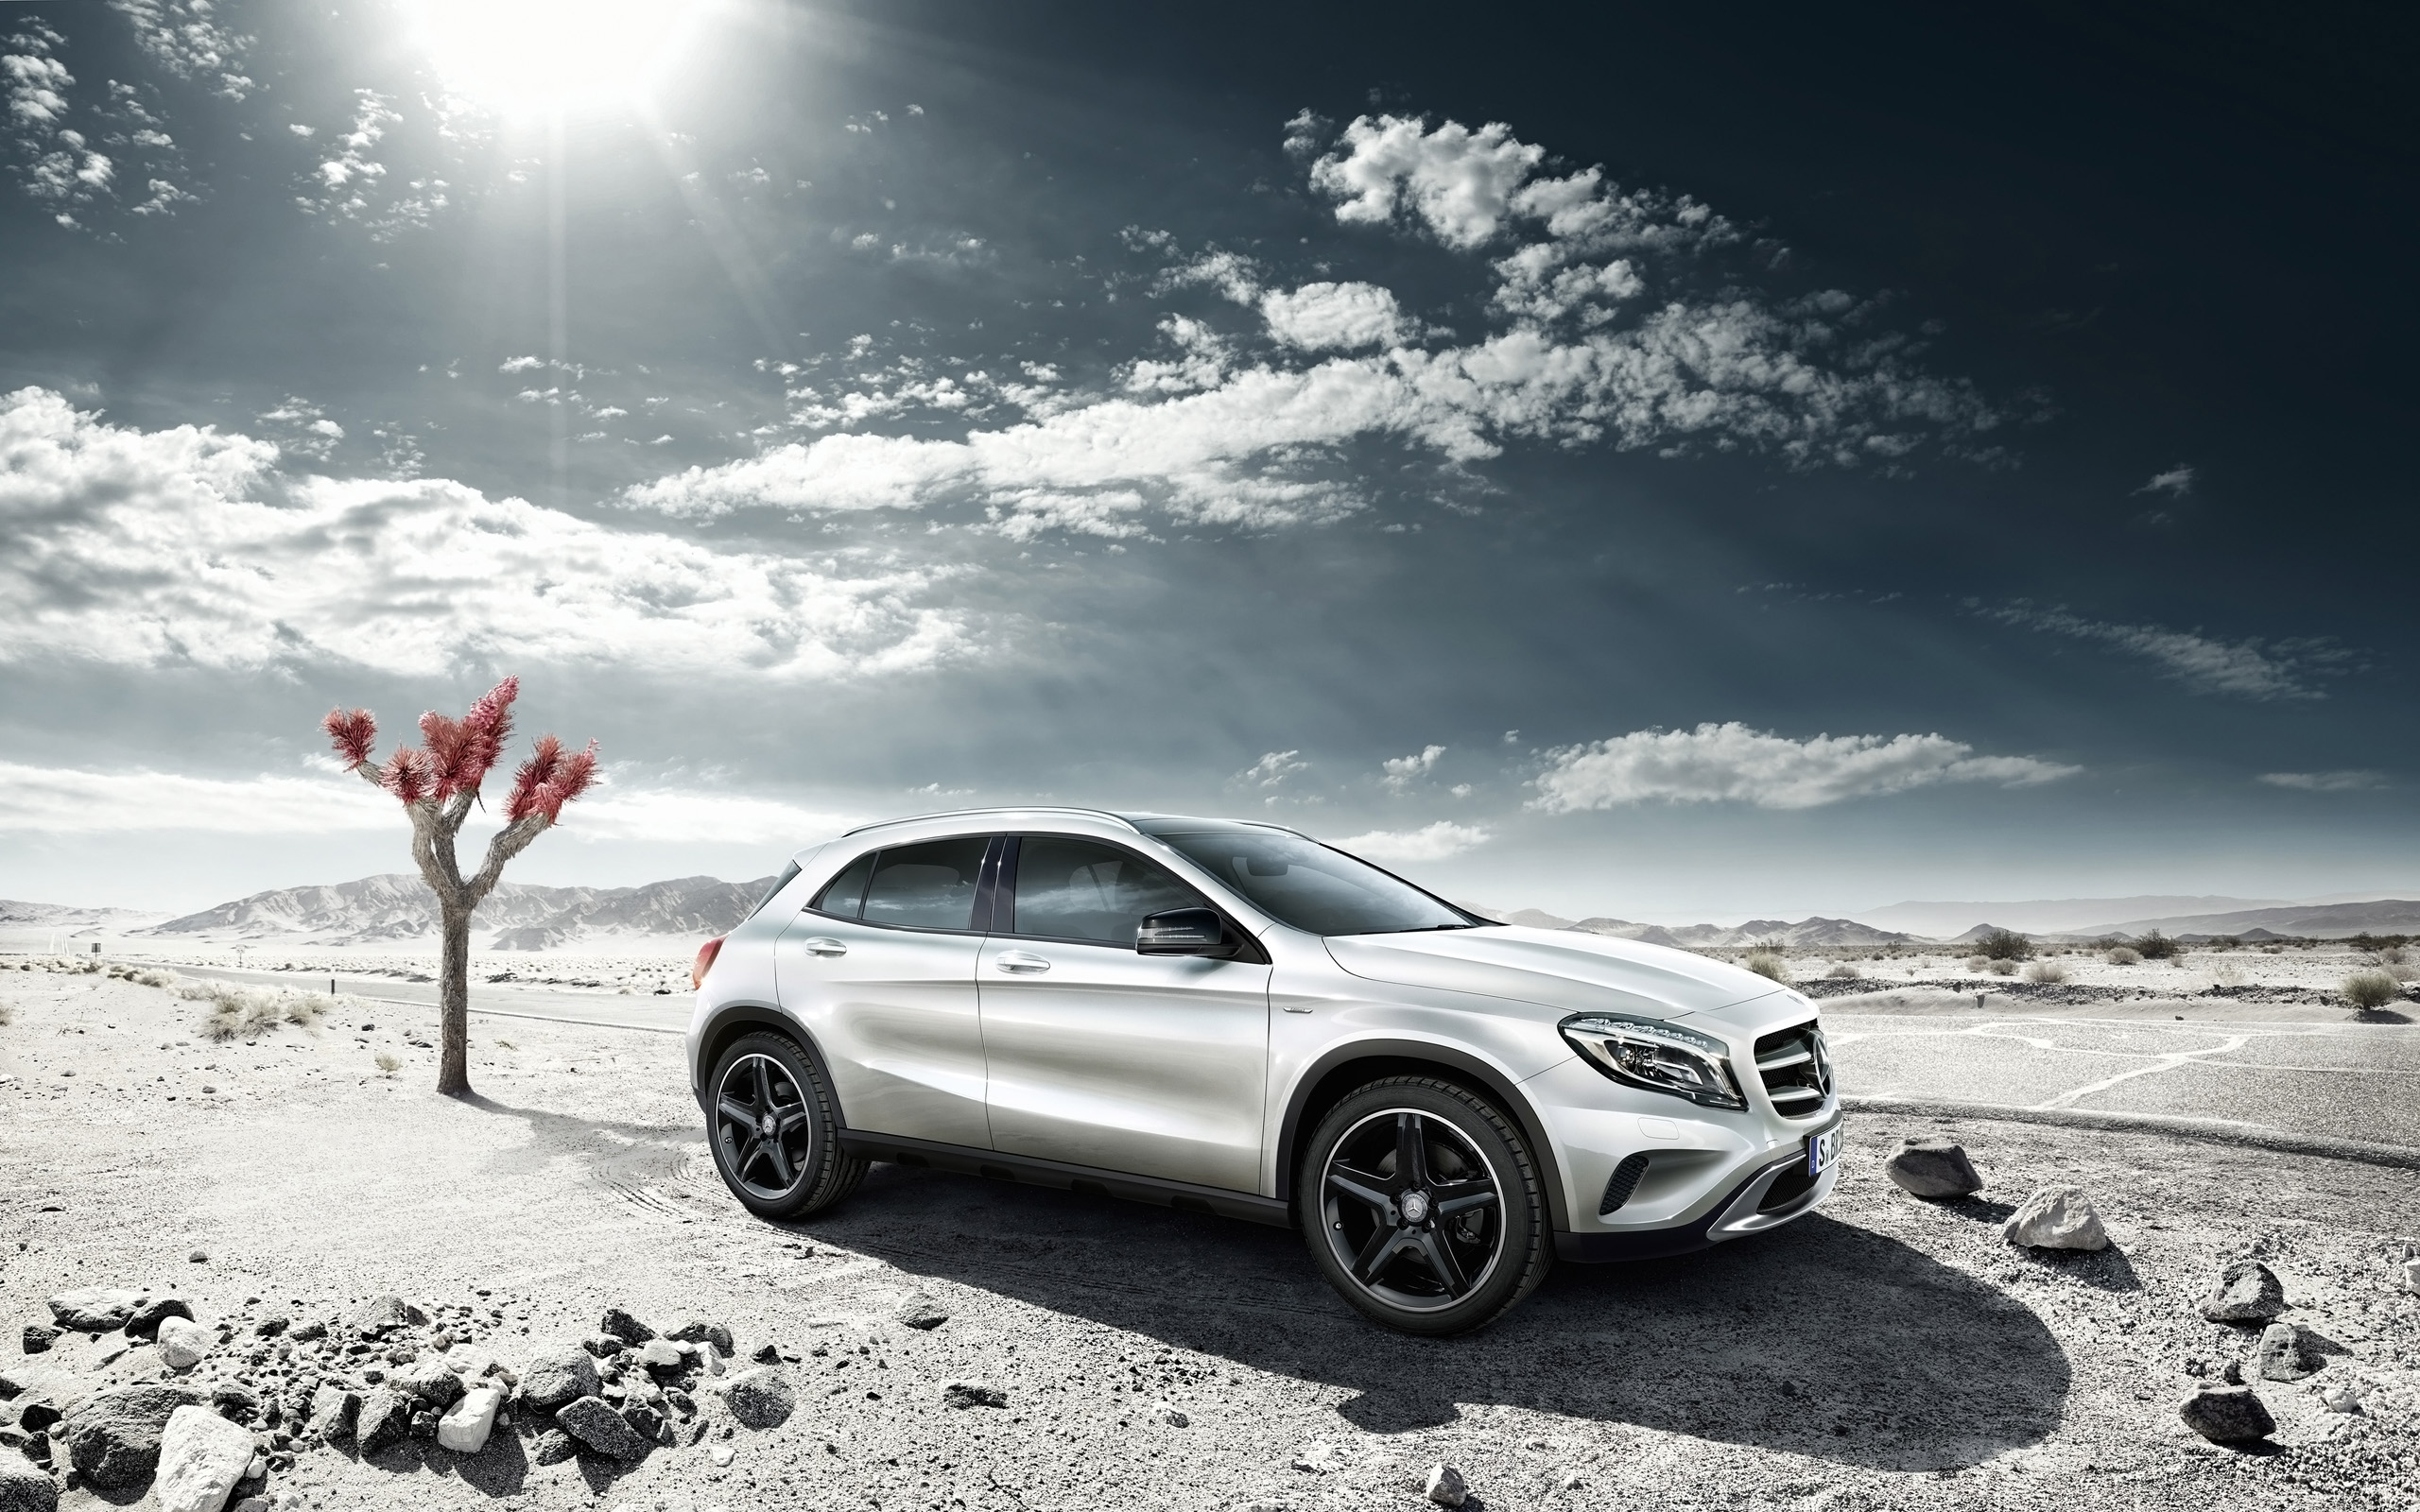 2014 Mercedes Benz GLA Edition Wallpaper | HD Car ...